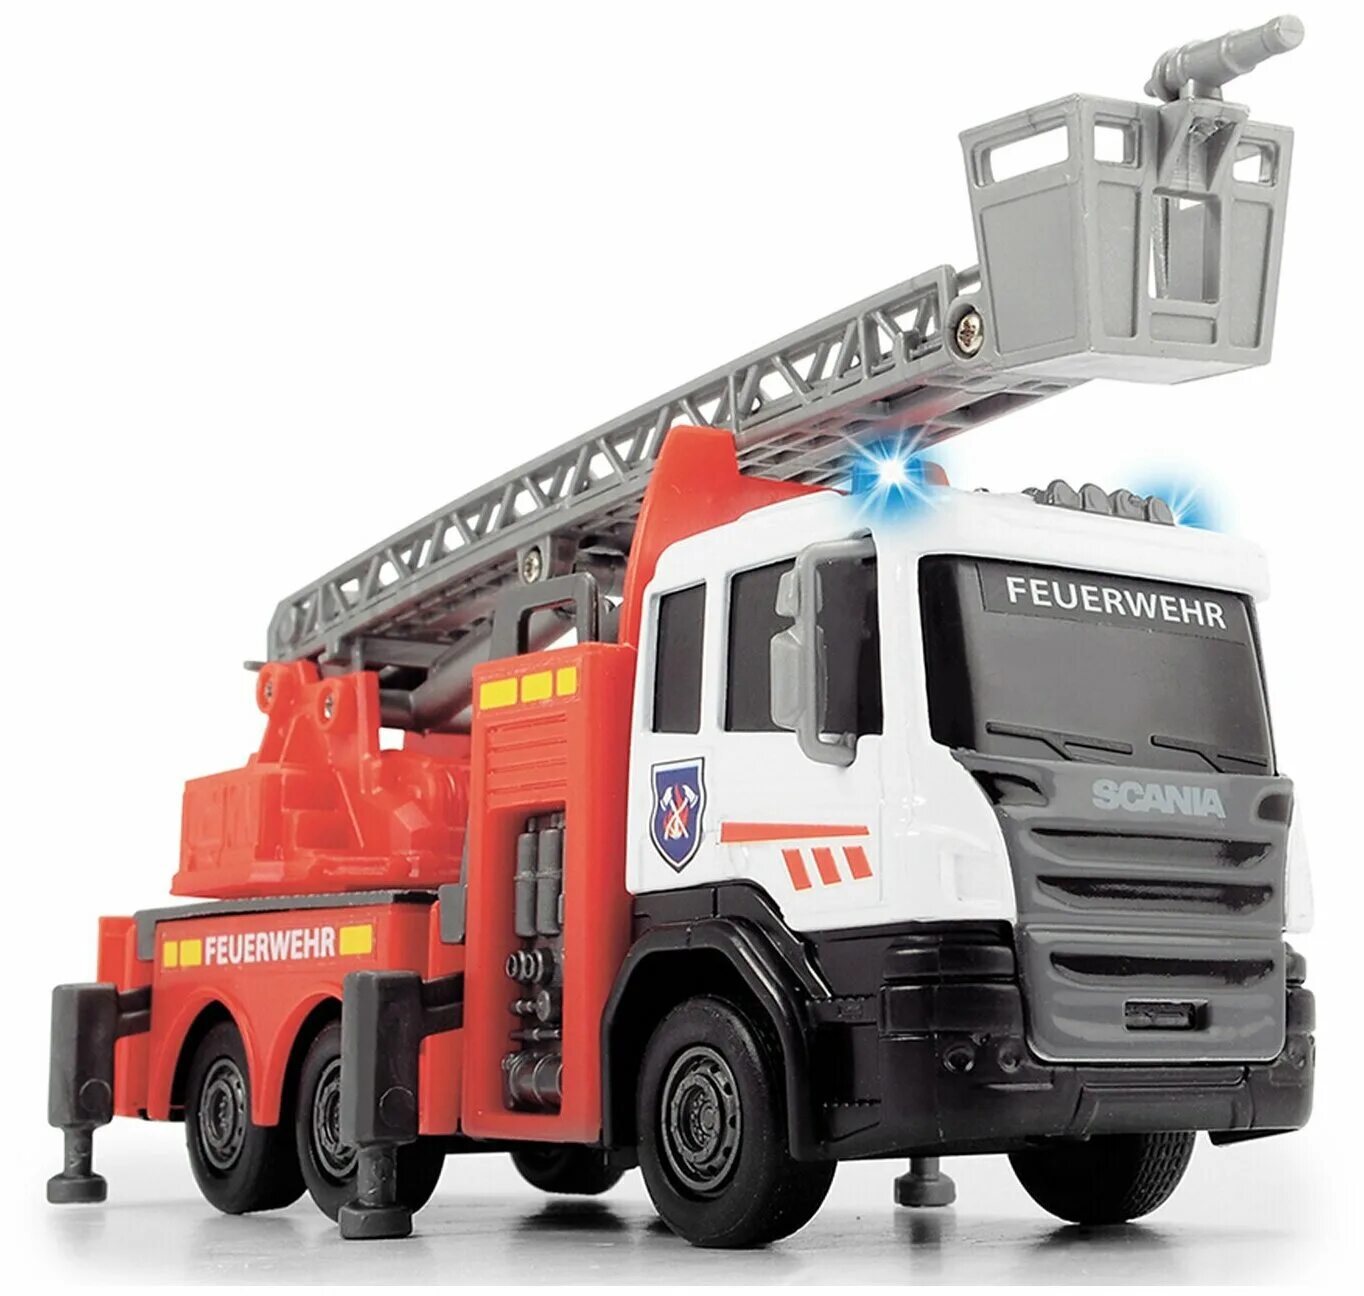 Коллекционная машинка скания. Игрушка Dickie Toys 3712016 пожарная машинка Scania die-Cast. Dickie Toys Скания. Пожарный автомобиль Dickie Toys пожарная машина (3717002) 30 см. Dickie пожарная машина Happy моторизированная свет, звук 25 см.